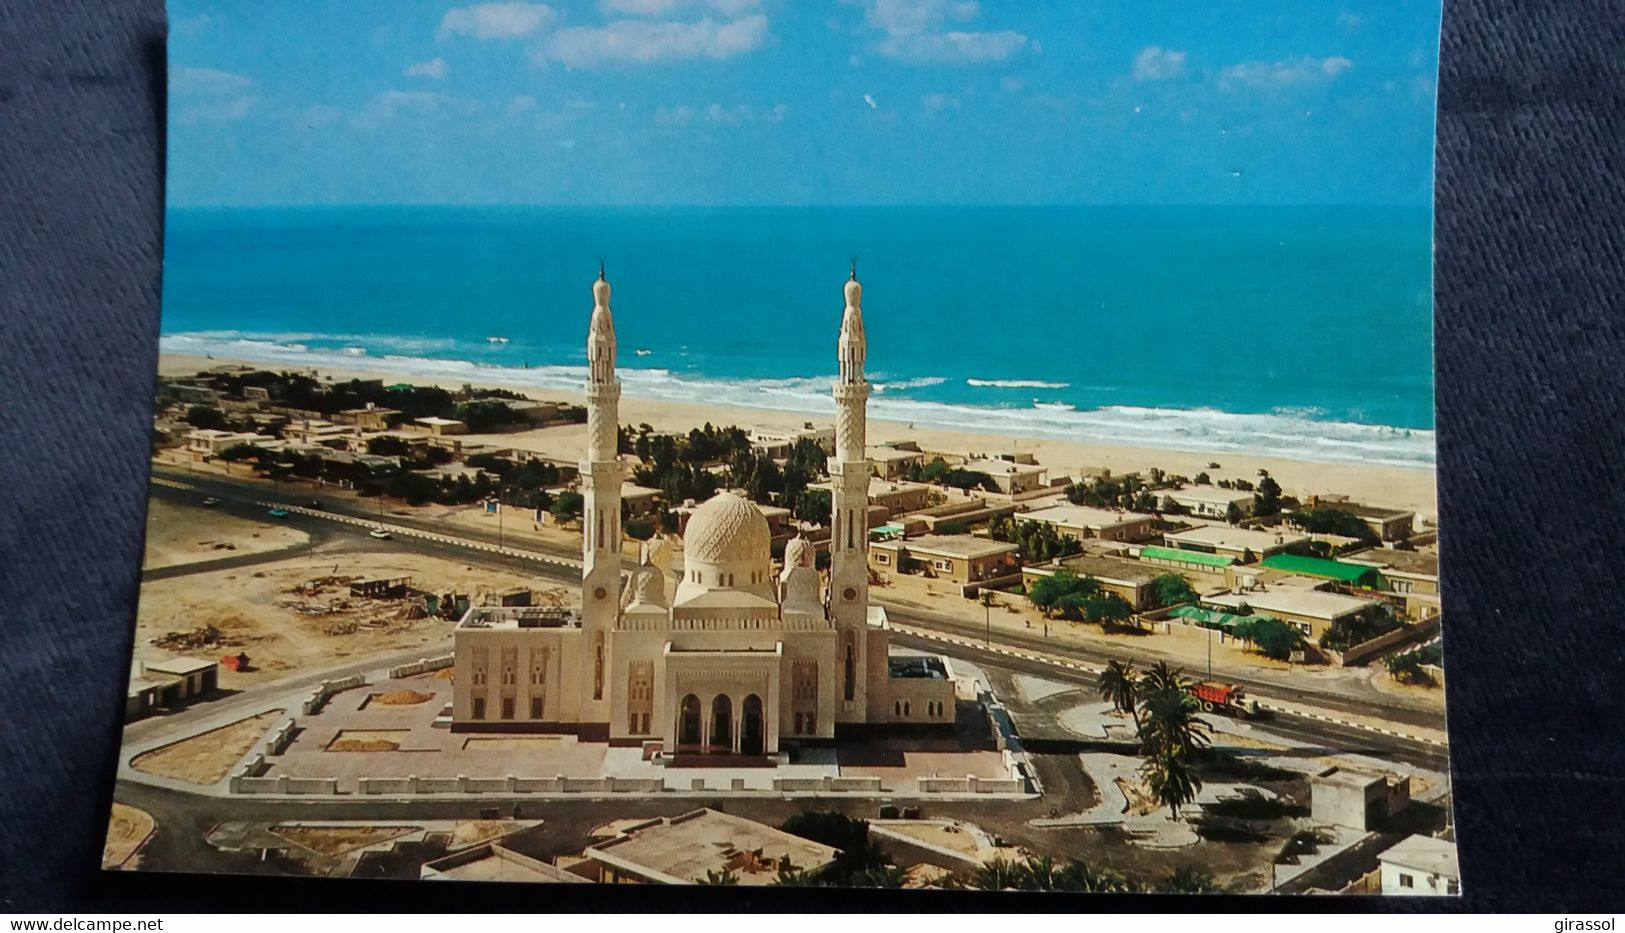 CPM DUBAI UAE MOSQUEE JUMAIRA  UNITED ARAB EMIRATES 1991 ED AWNI - Emirats Arabes Unis